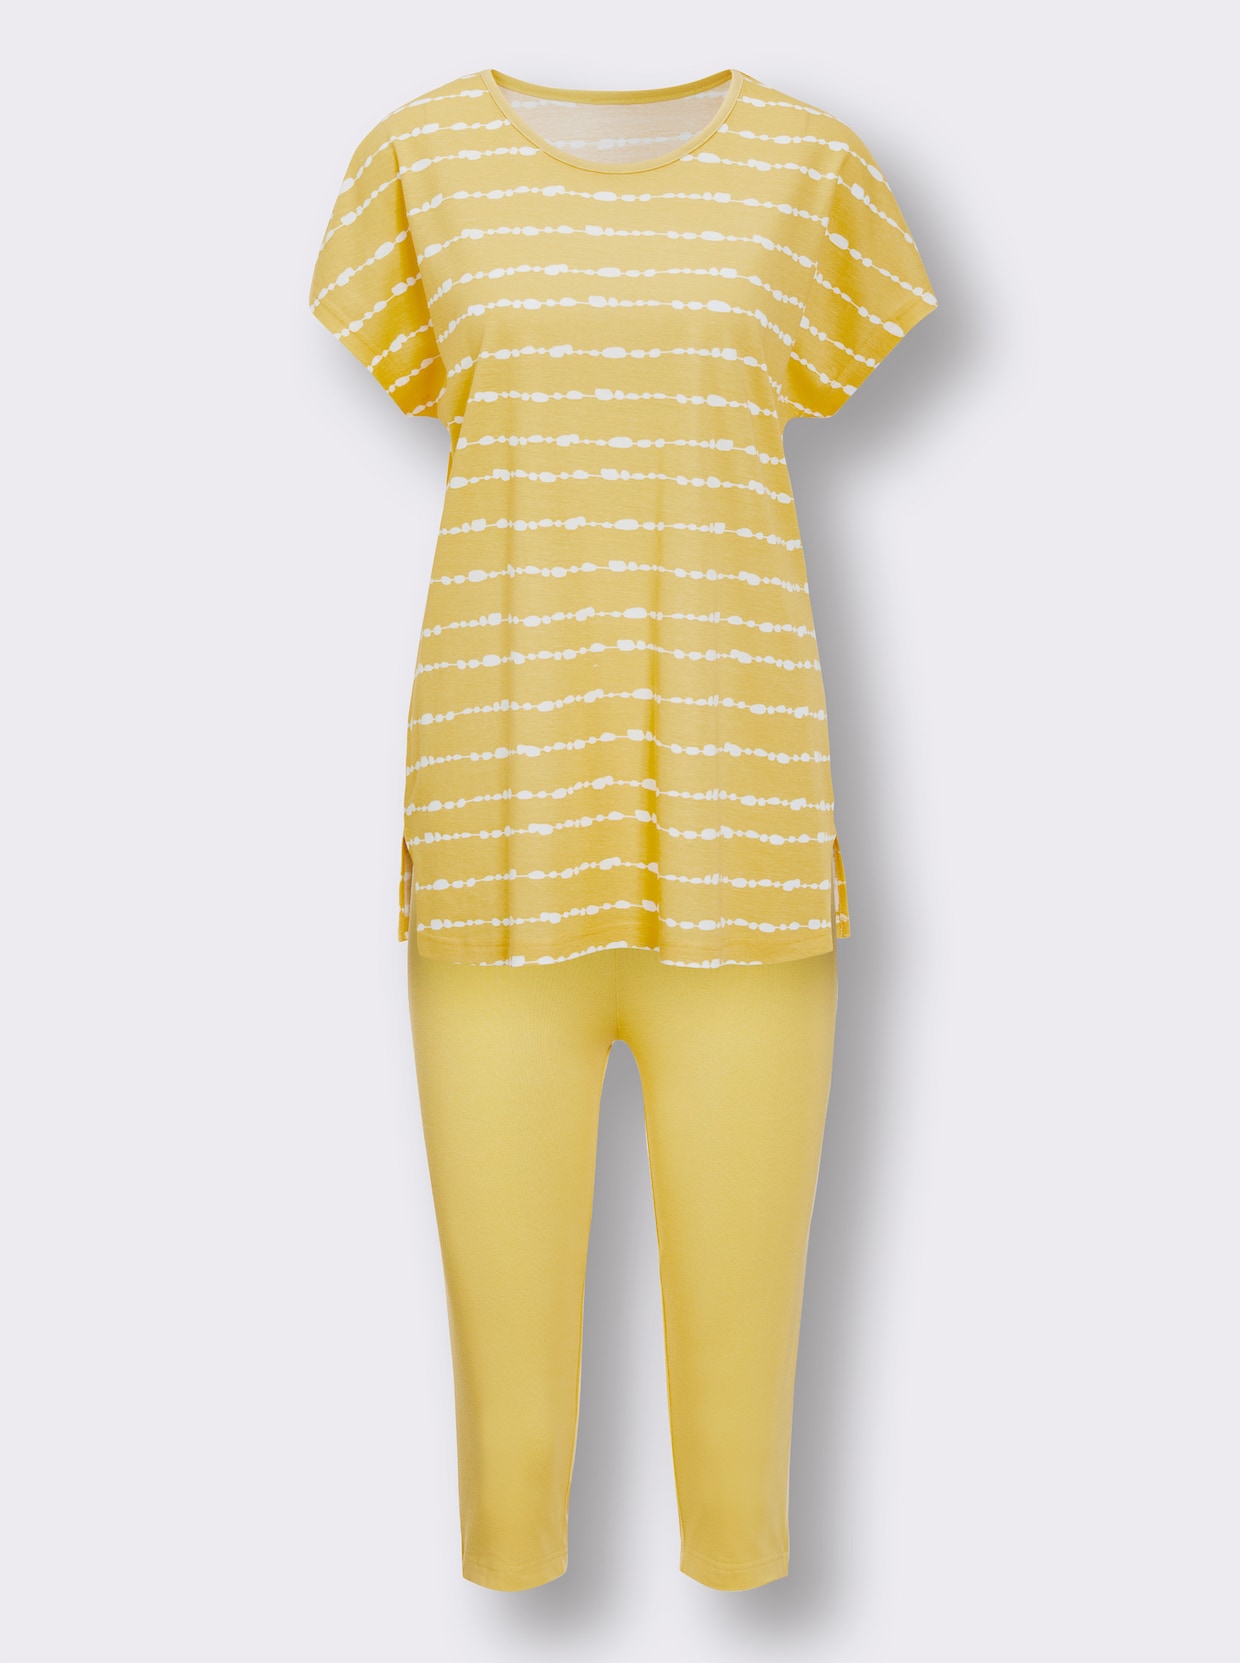 wäschepur Capri-Anzug - gelb-weiß-gestreift